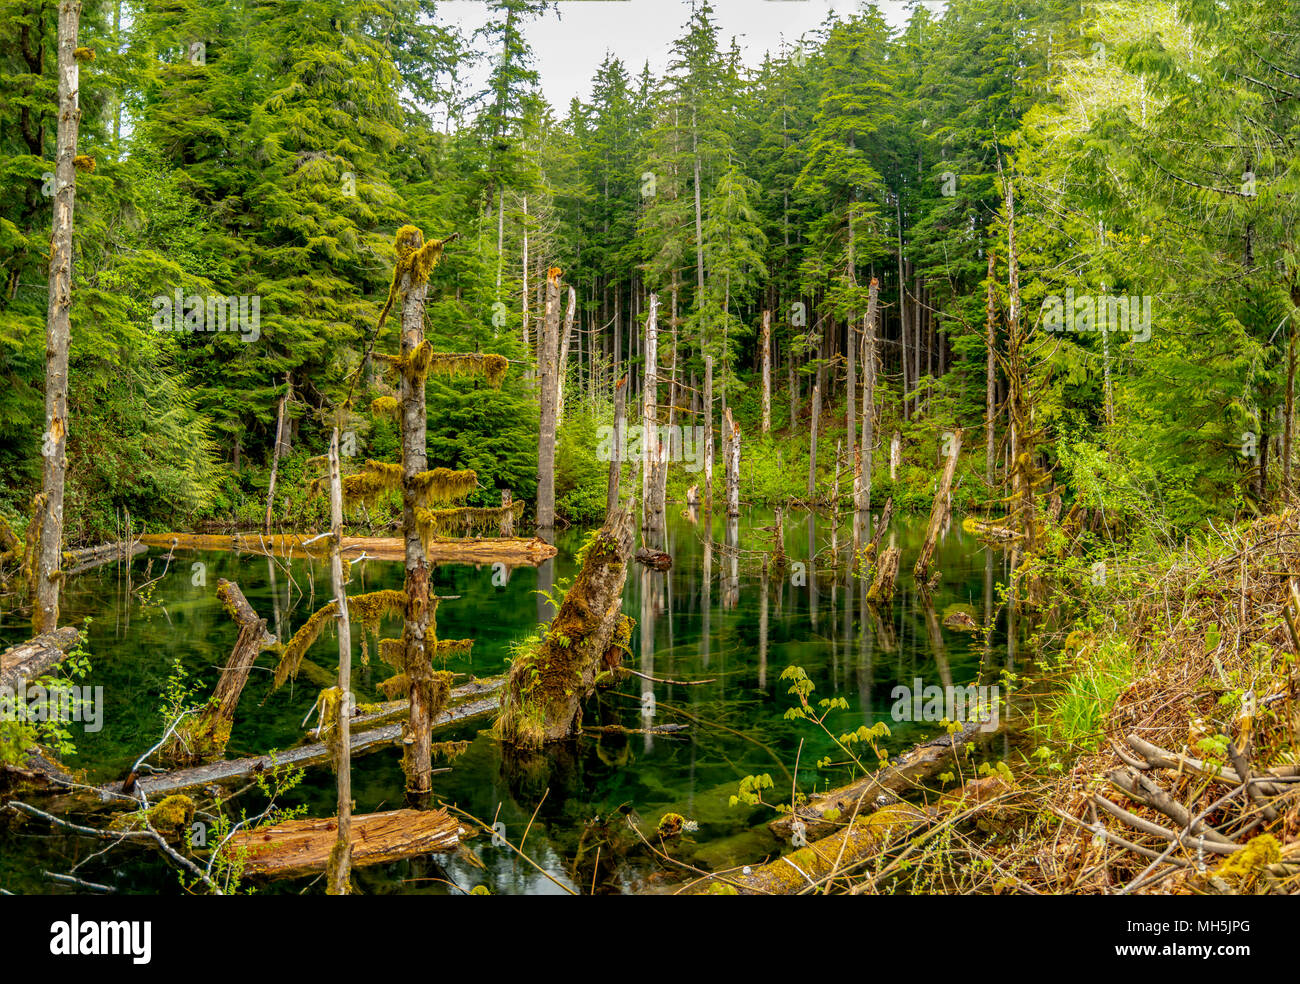 Beauté naturelle, dans l'île de Vancouver - Série 2 Très petite mais belle et douce petit étang près de l'île de Vancouver BC Avatar Grove Canada 4. Banque D'Images